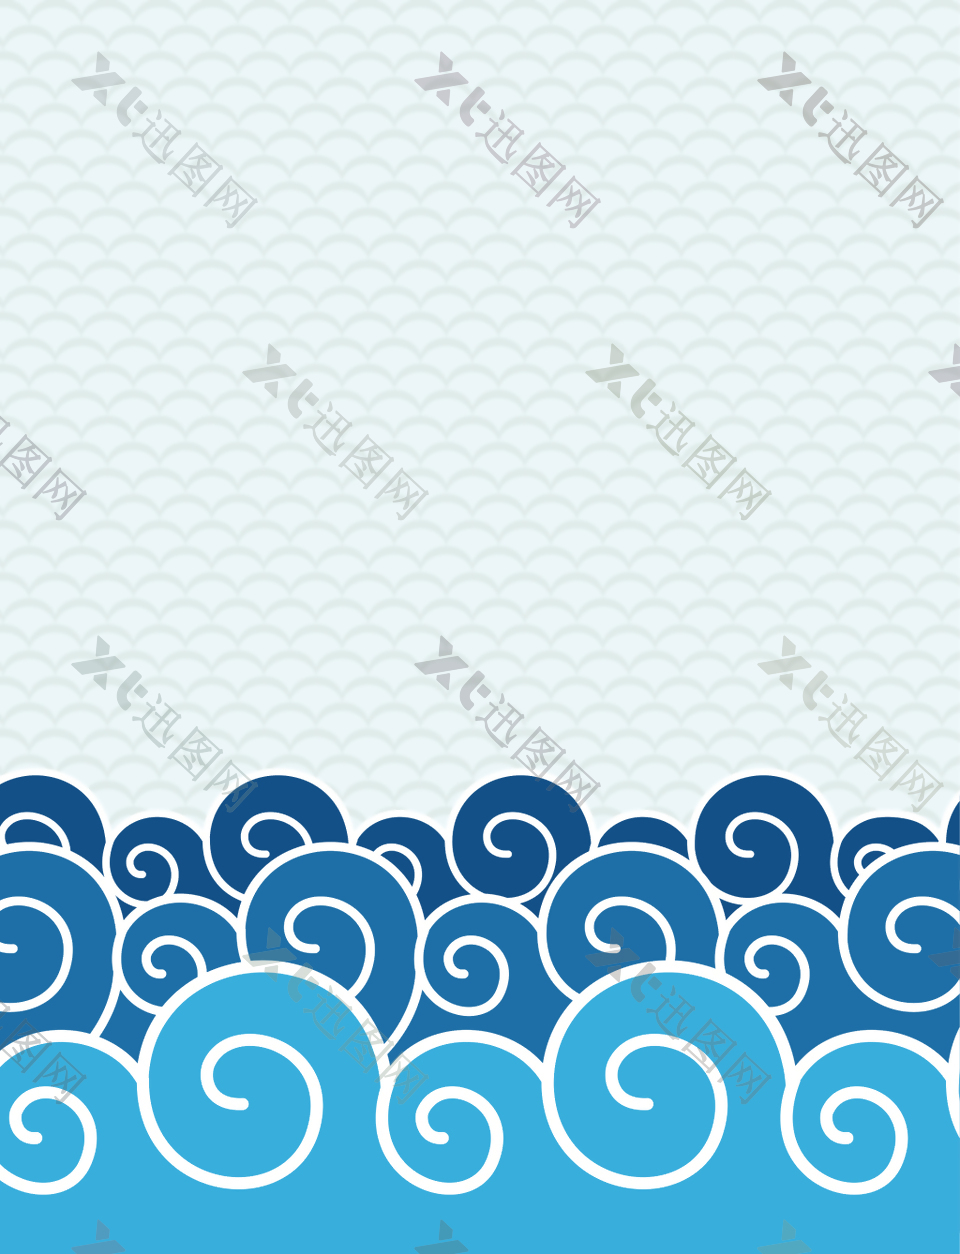 矢量中国风传统海水纹背景素材